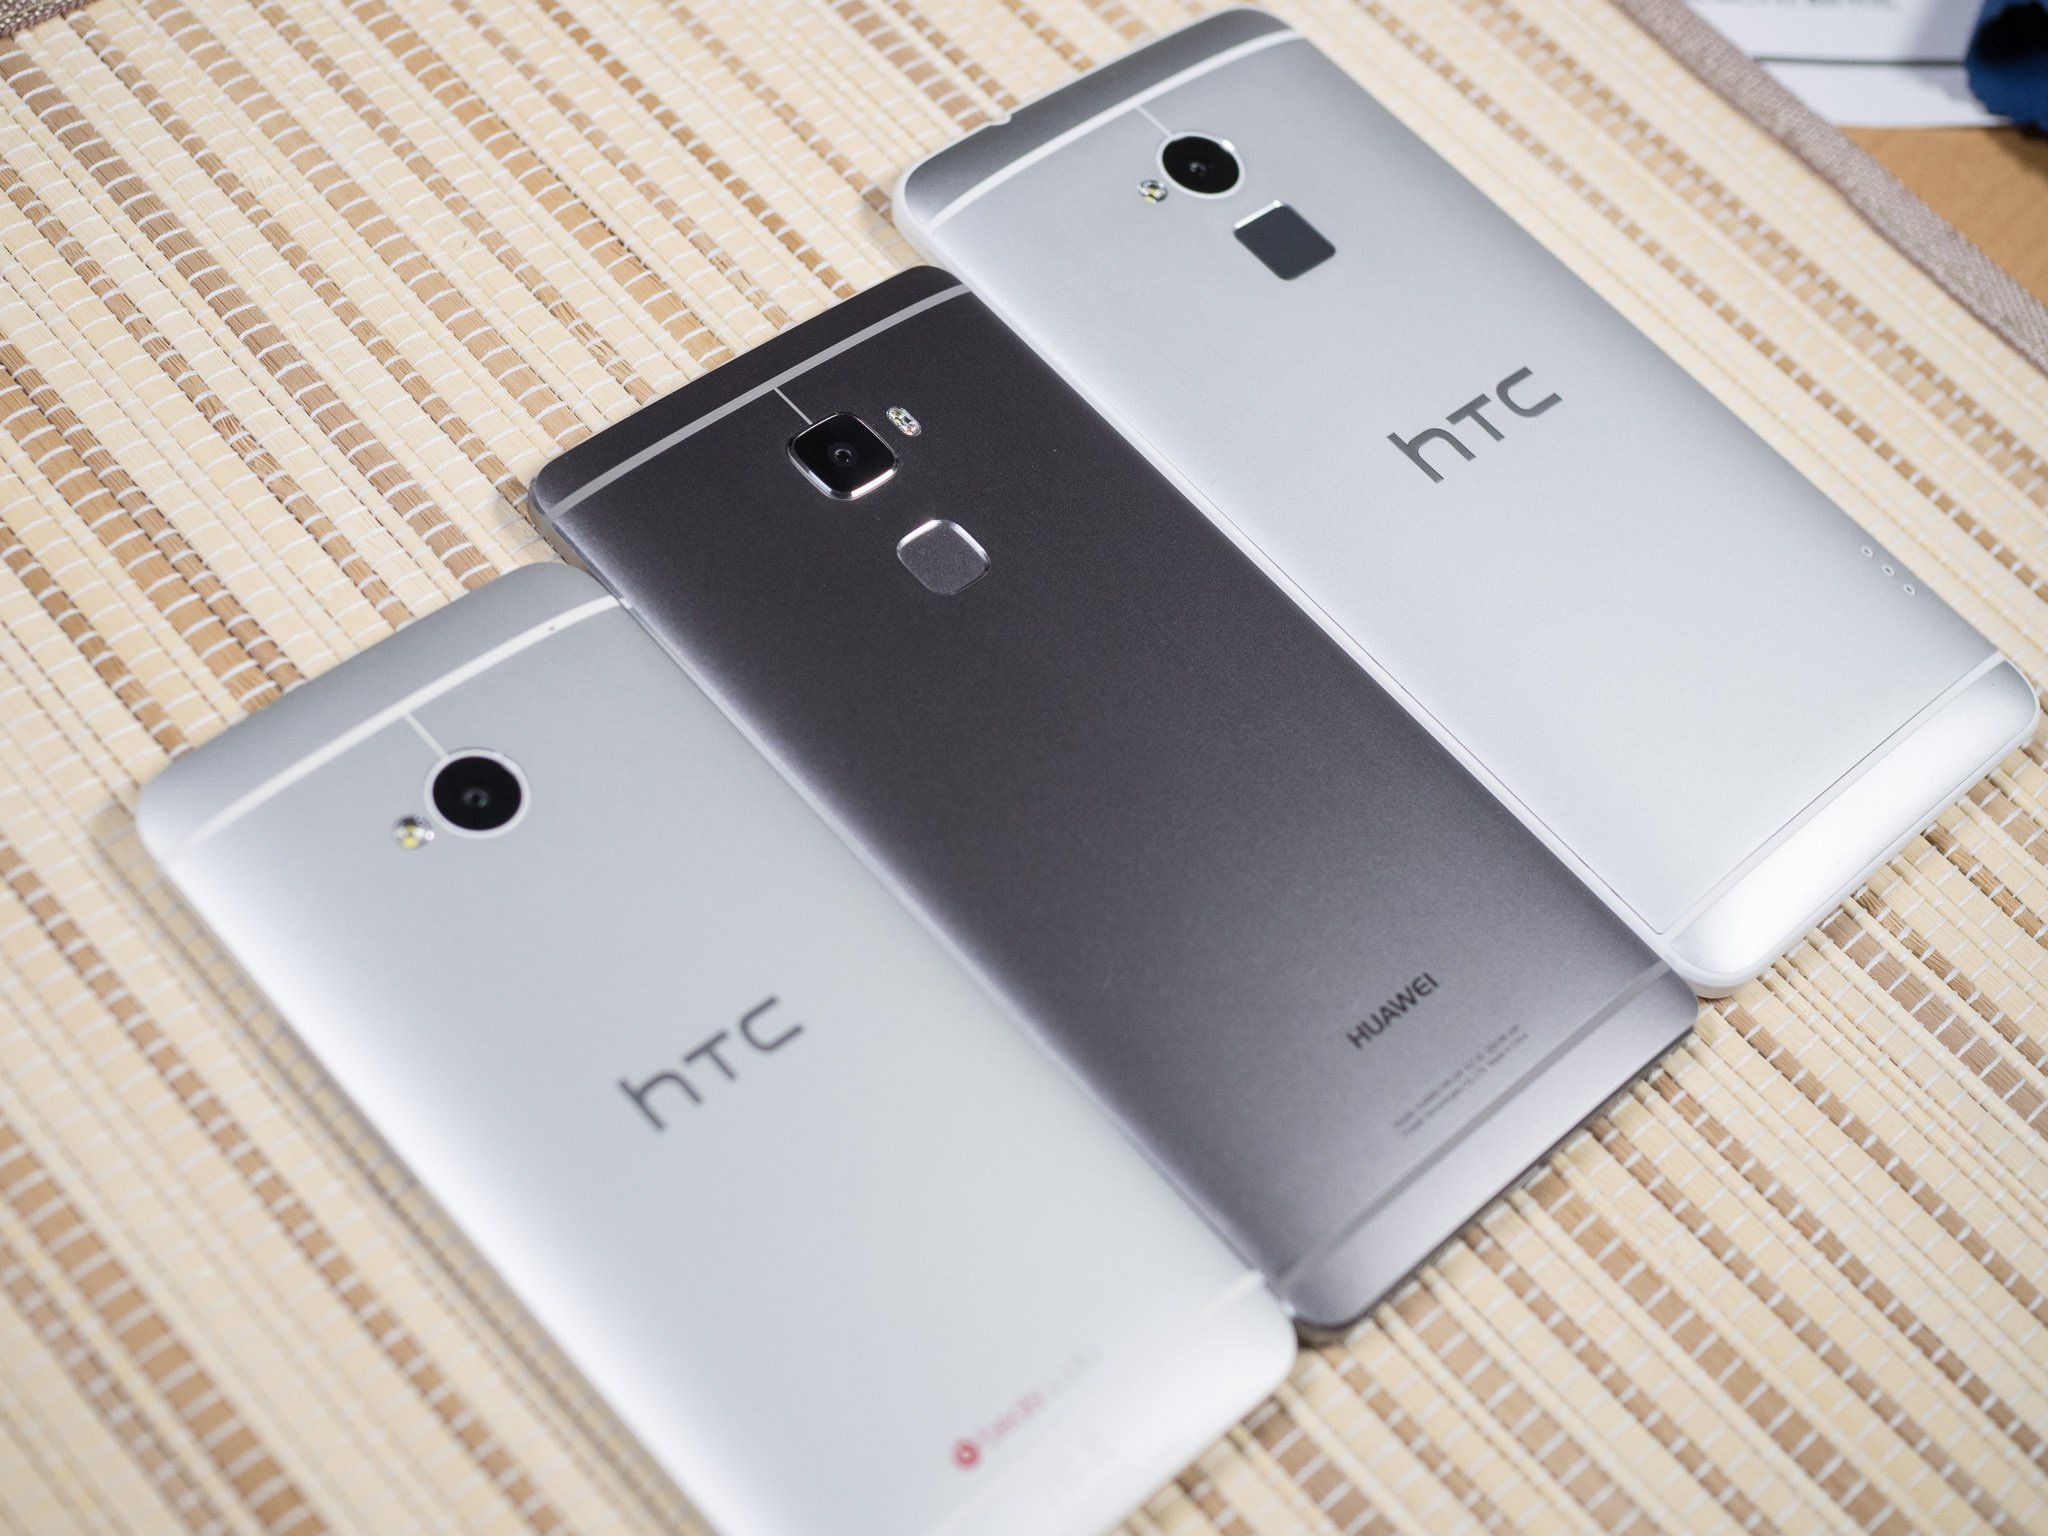 HTC and Huawei — kinda similar, too